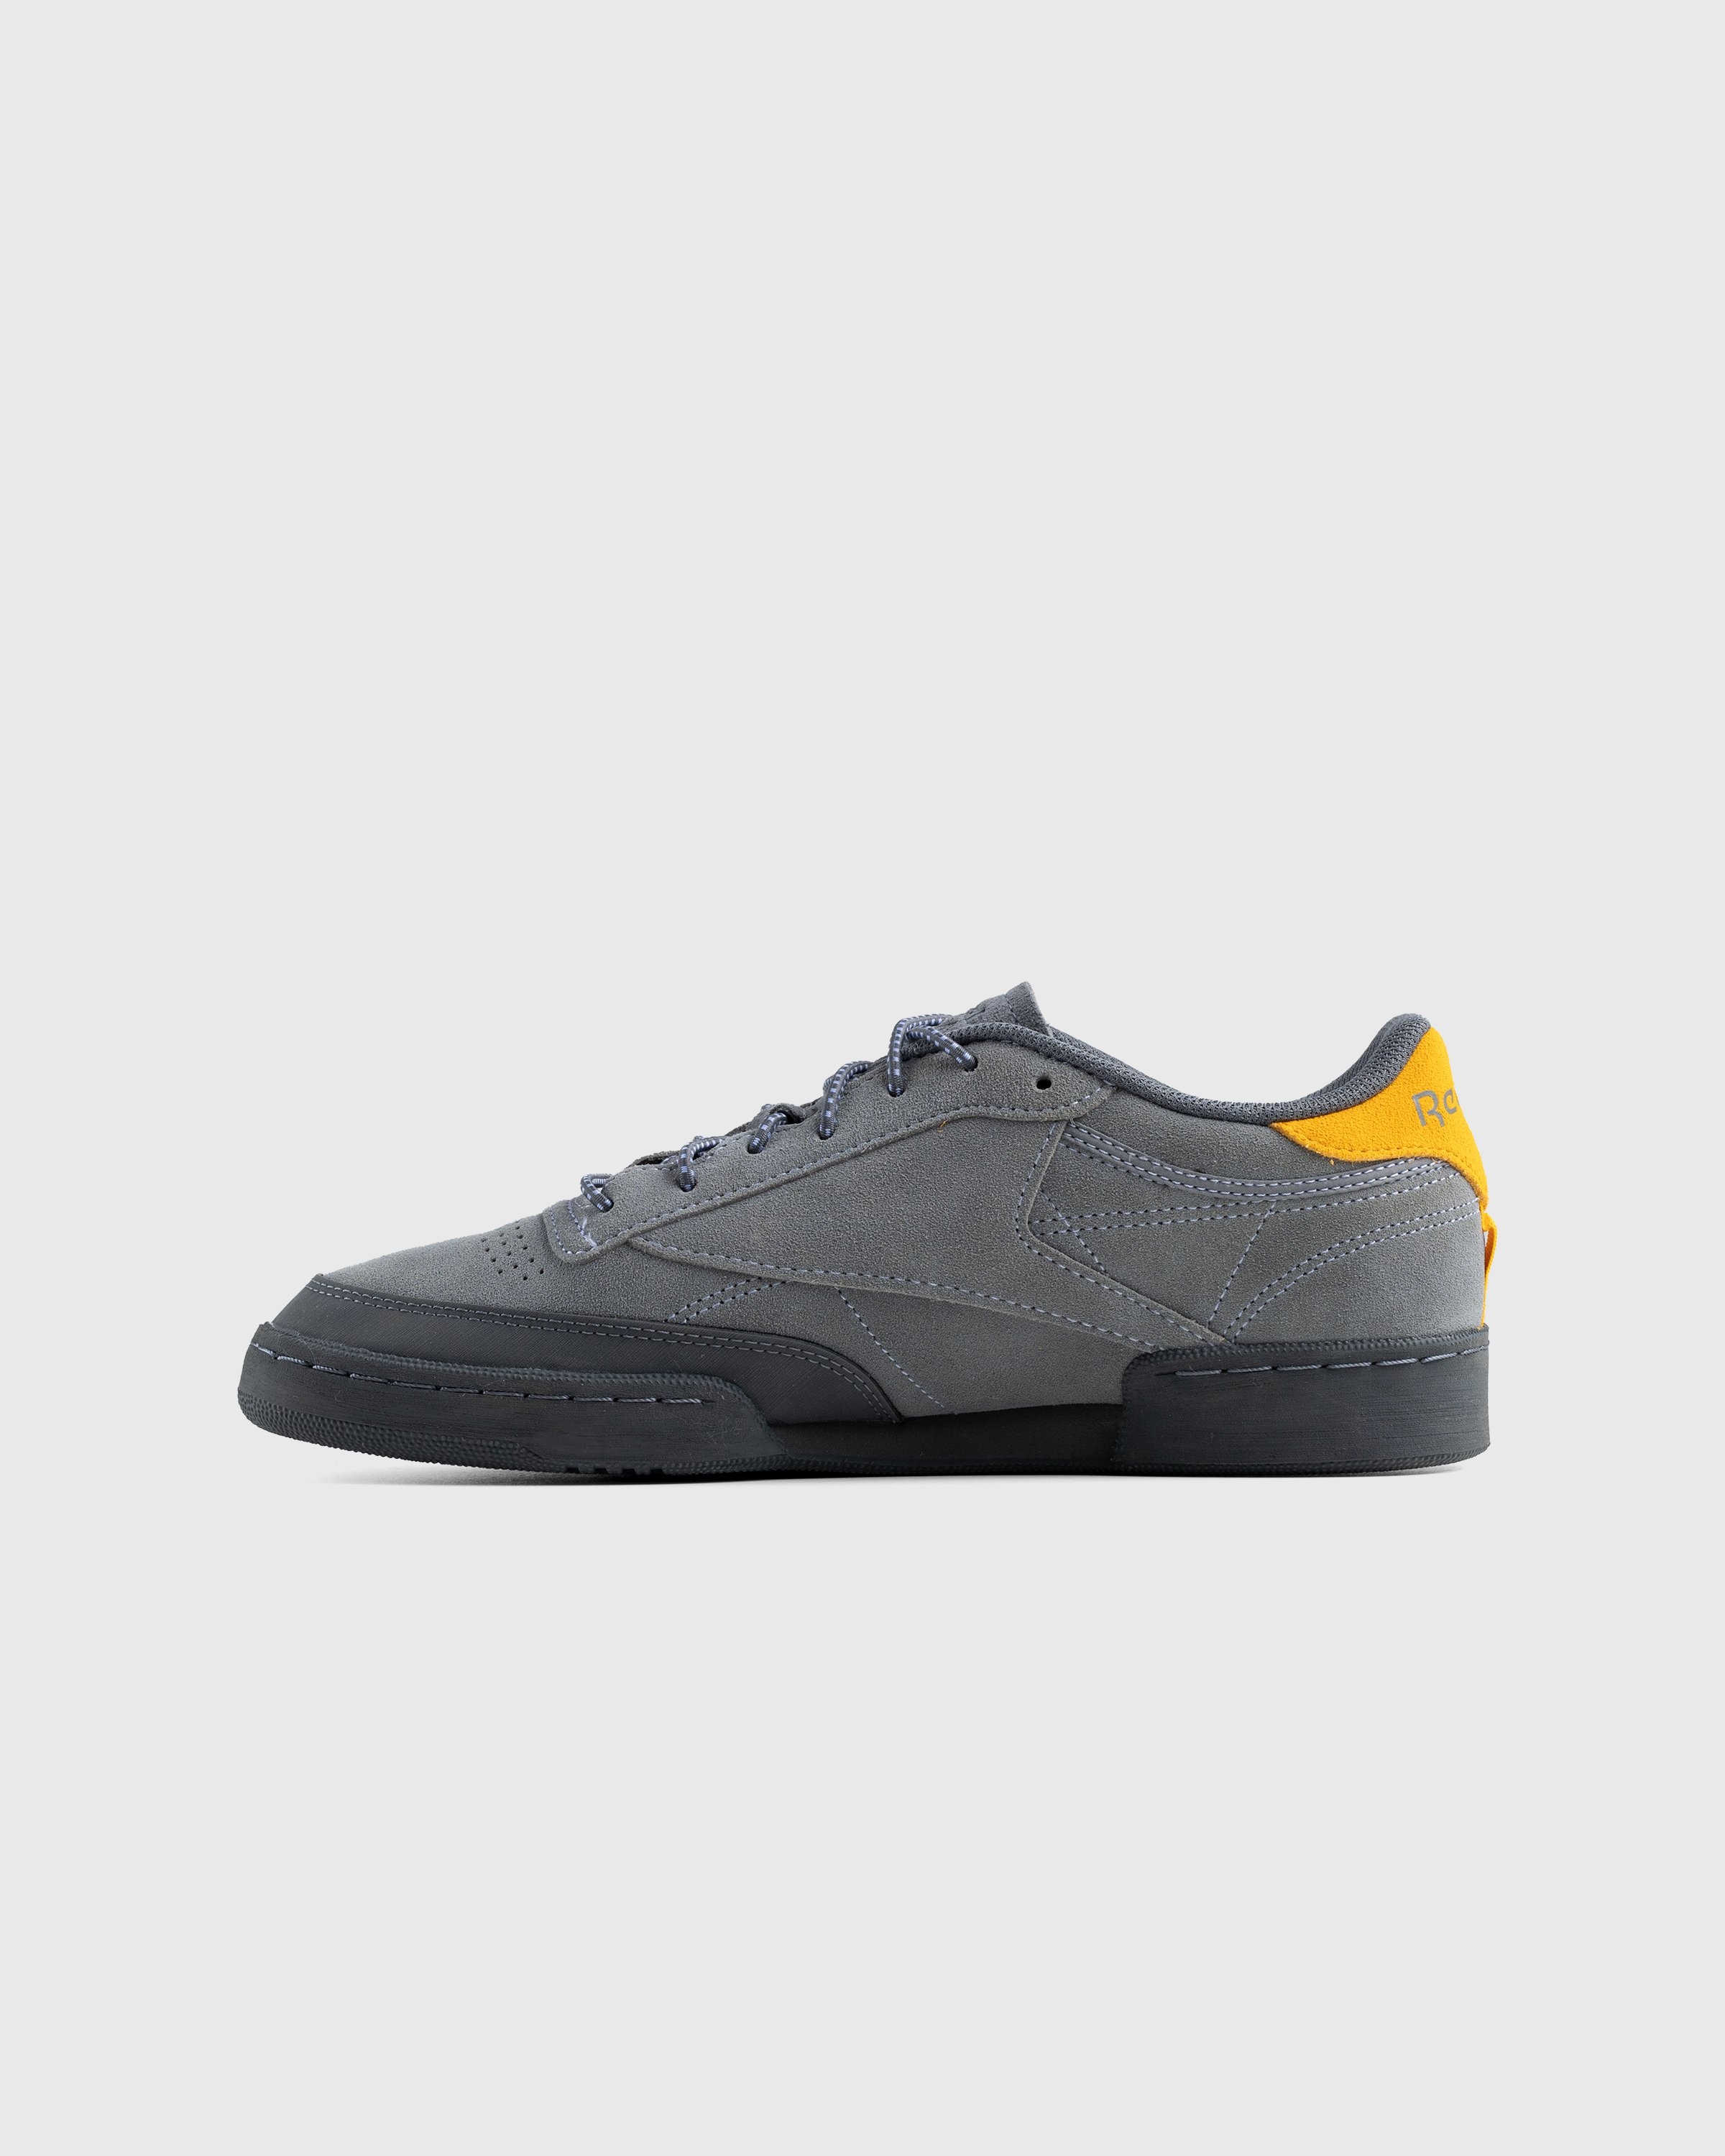 Reebok – Club C 85 Grey - Low Top Sneakers - Grey - Image 2